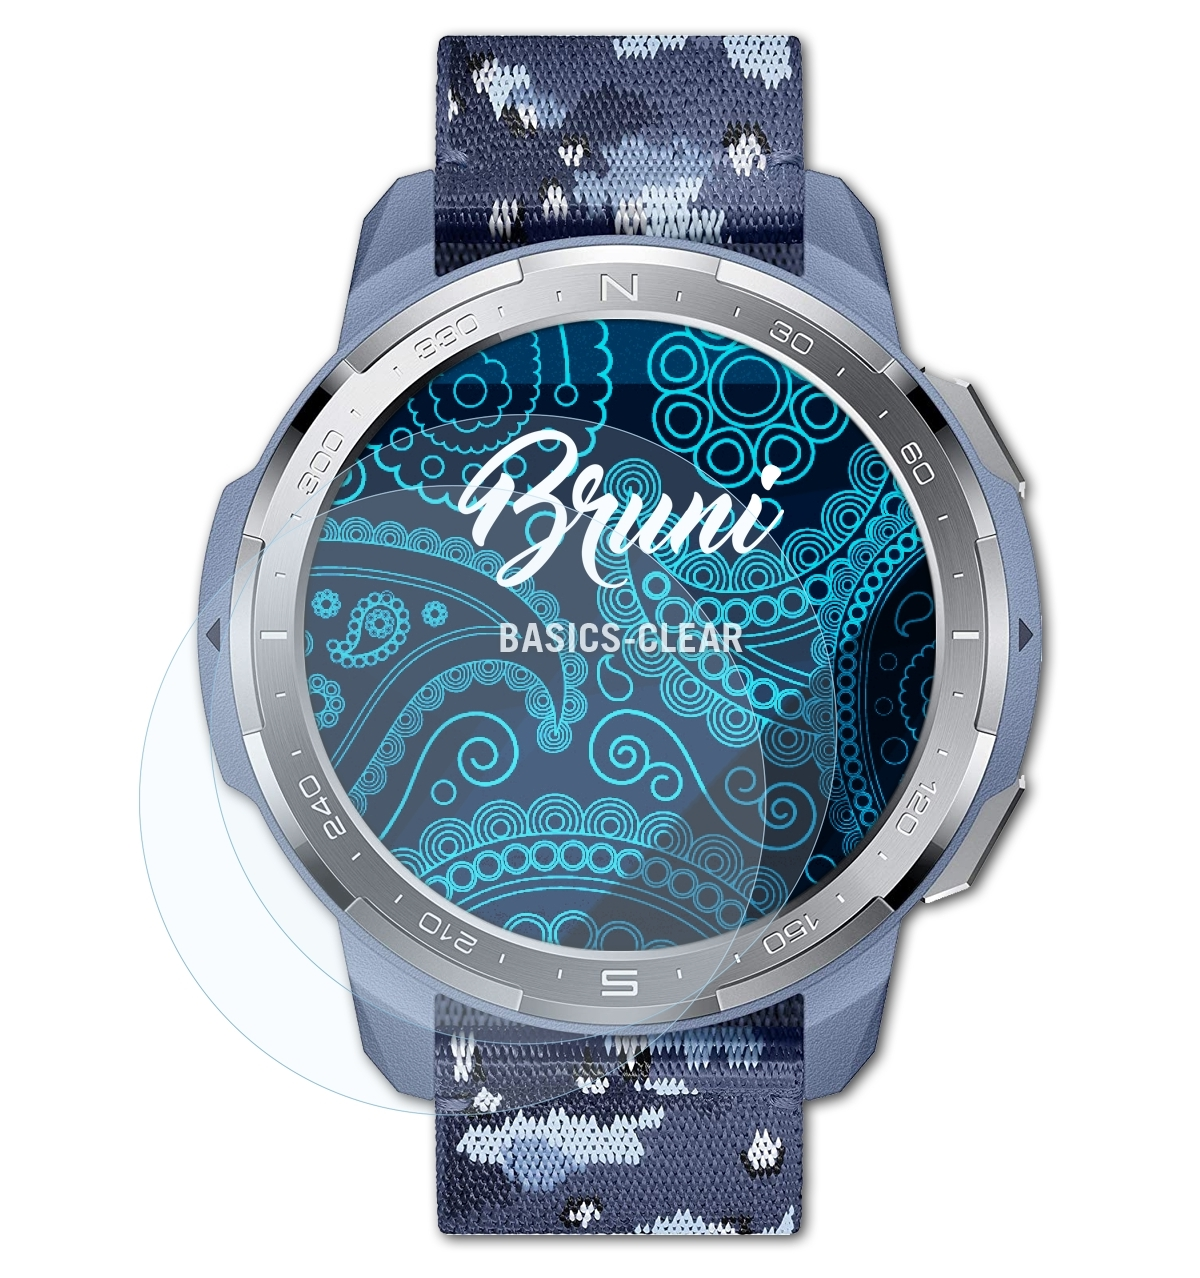 BRUNI 2x Basics-Clear Watch Pro) Honor GS Schutzfolie(für